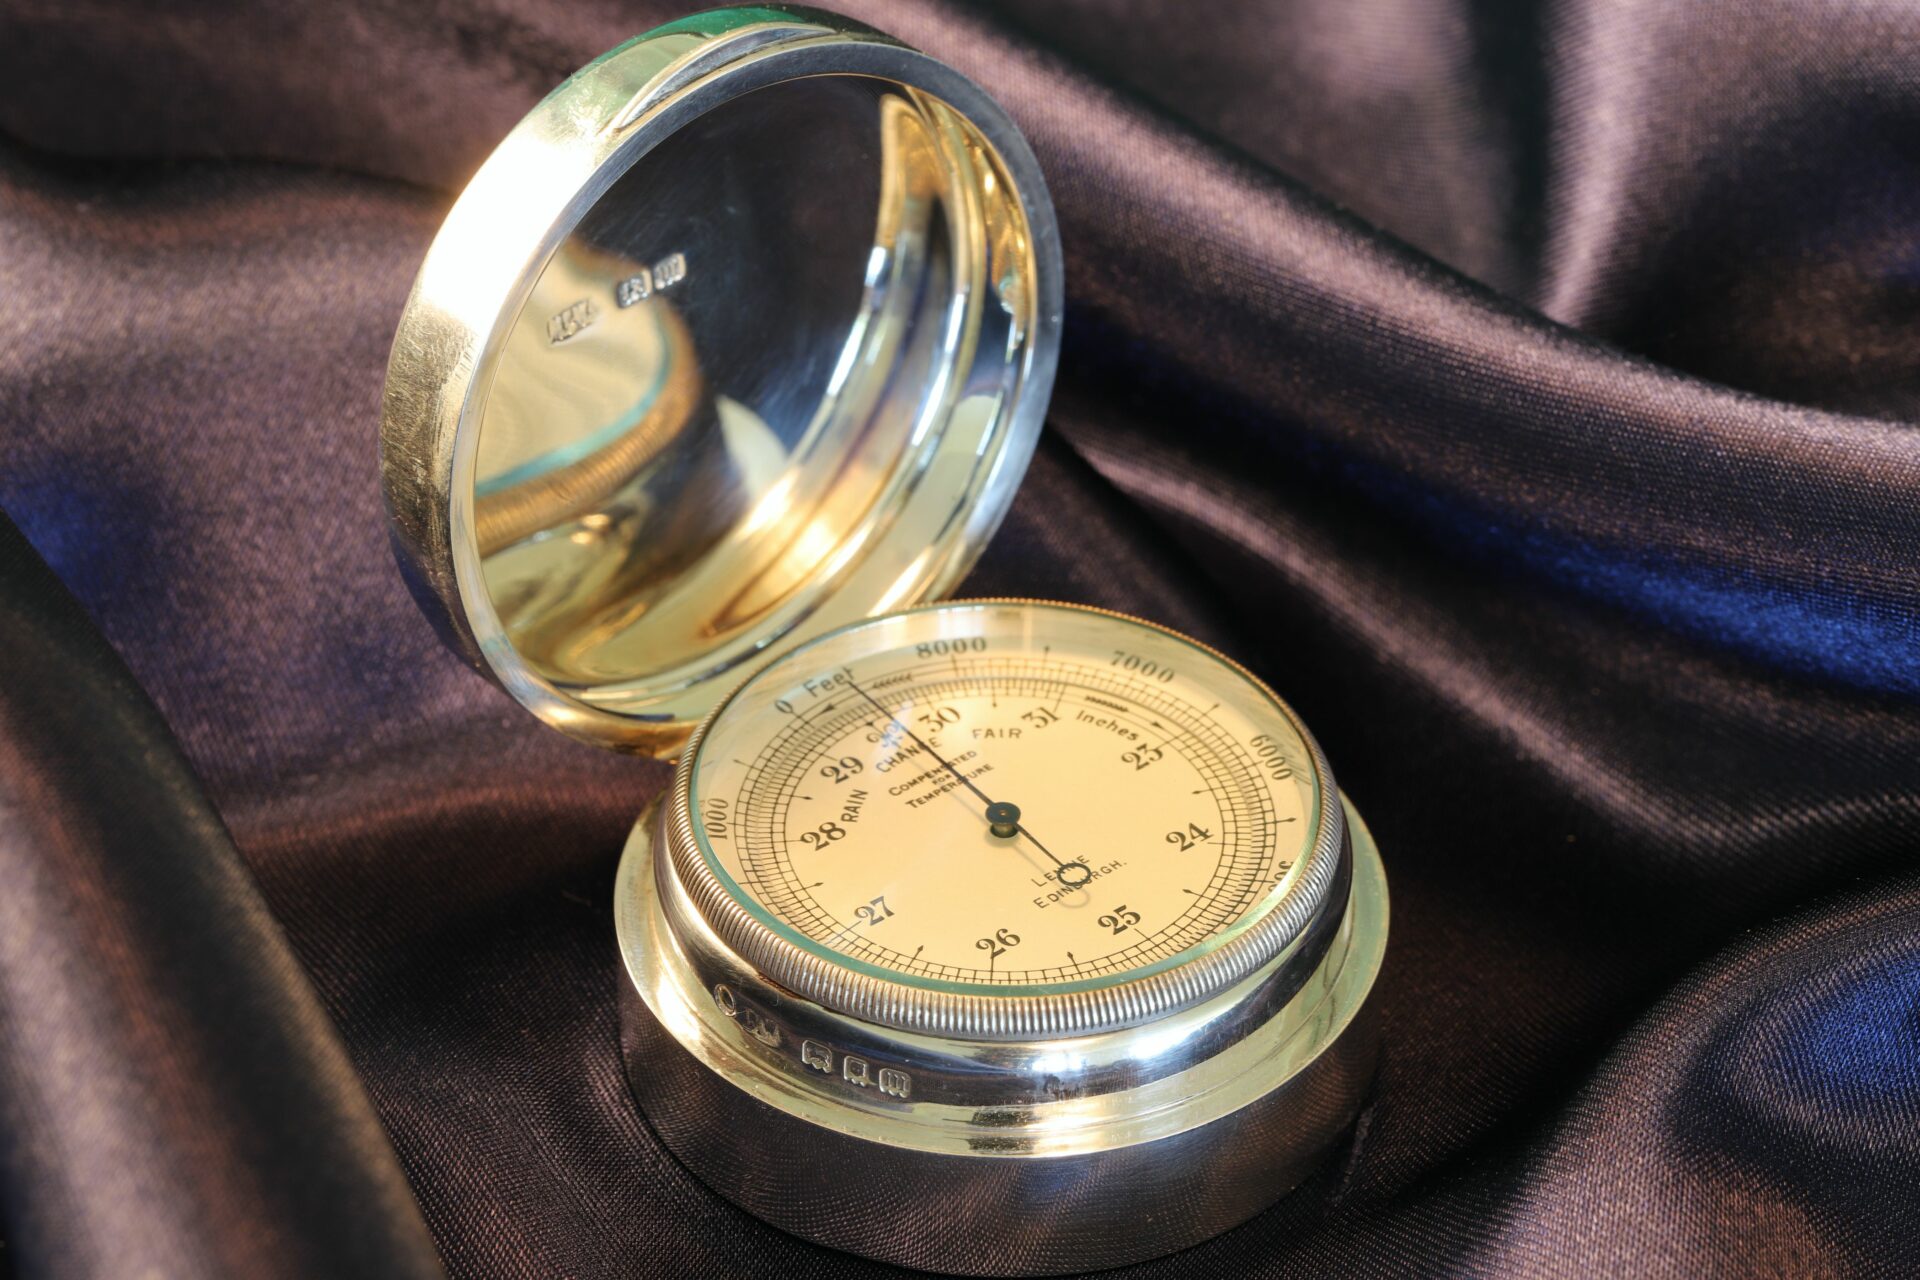 Negretti & Zambra Pocket Barometer in Silver Case by Mappin & Webb c1927 taken from lefthand side showing hallmarks